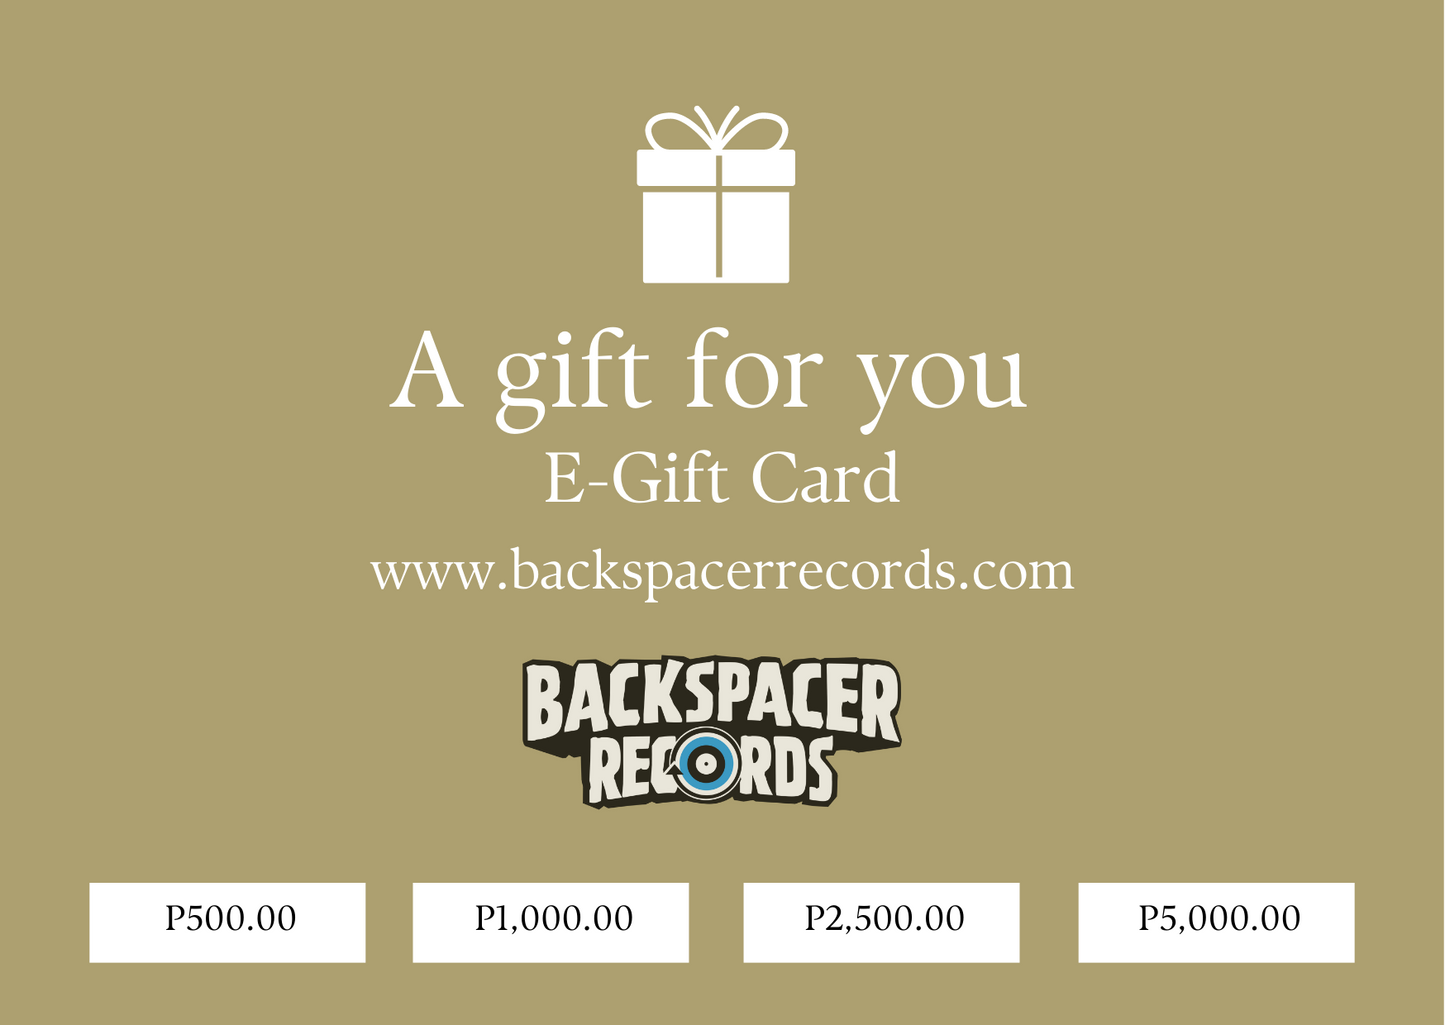 Backspacer Records E-Gift Card